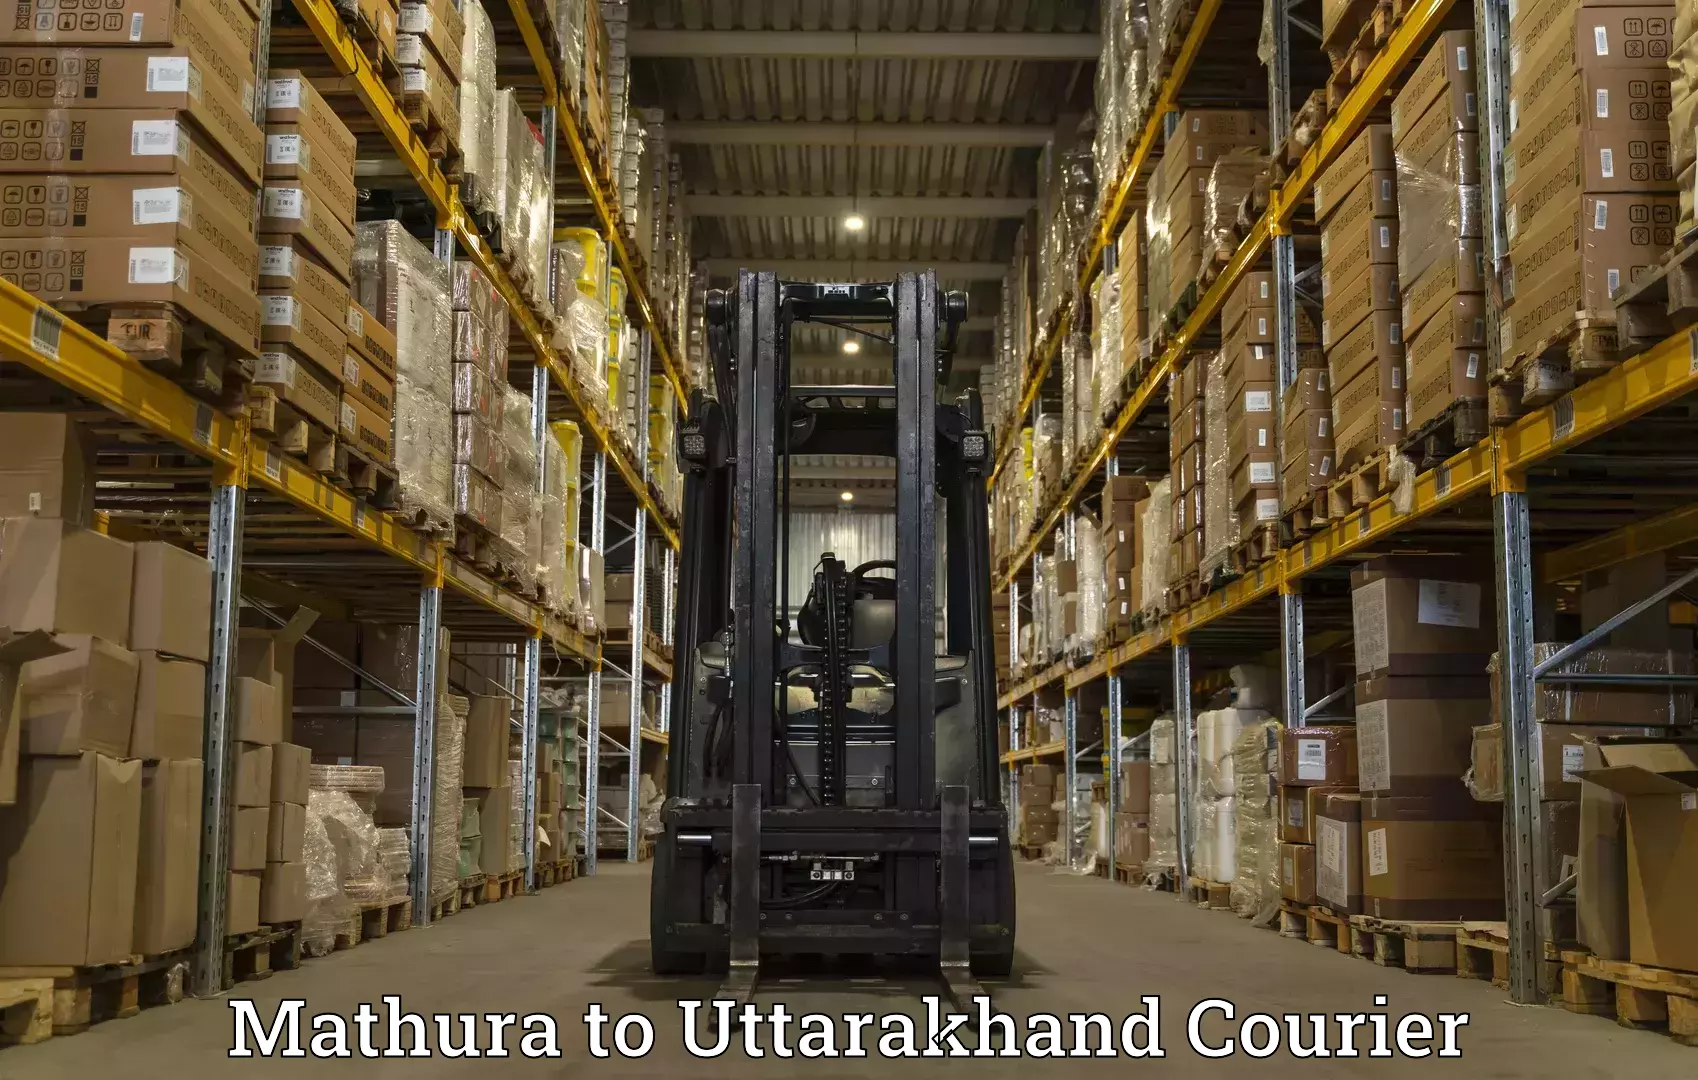 24/7 courier service Mathura to Dehradun